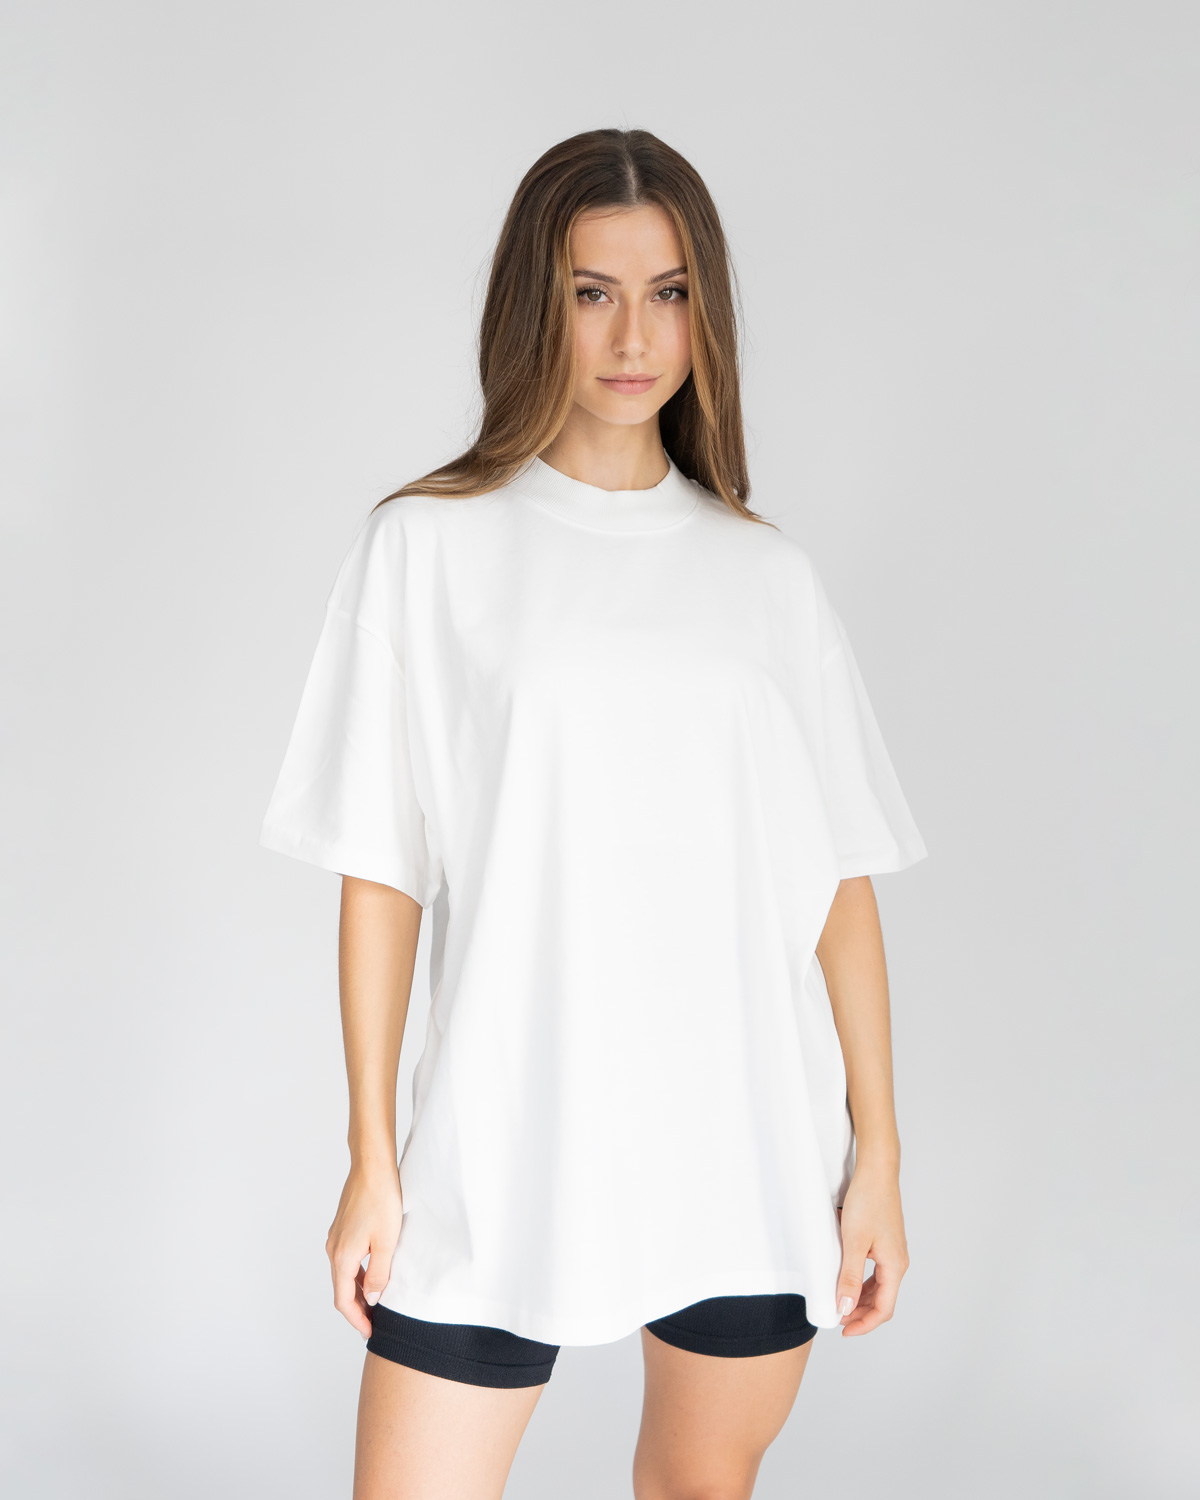 Relaxed Basic T-Shirt Flat White - Jay Blanc